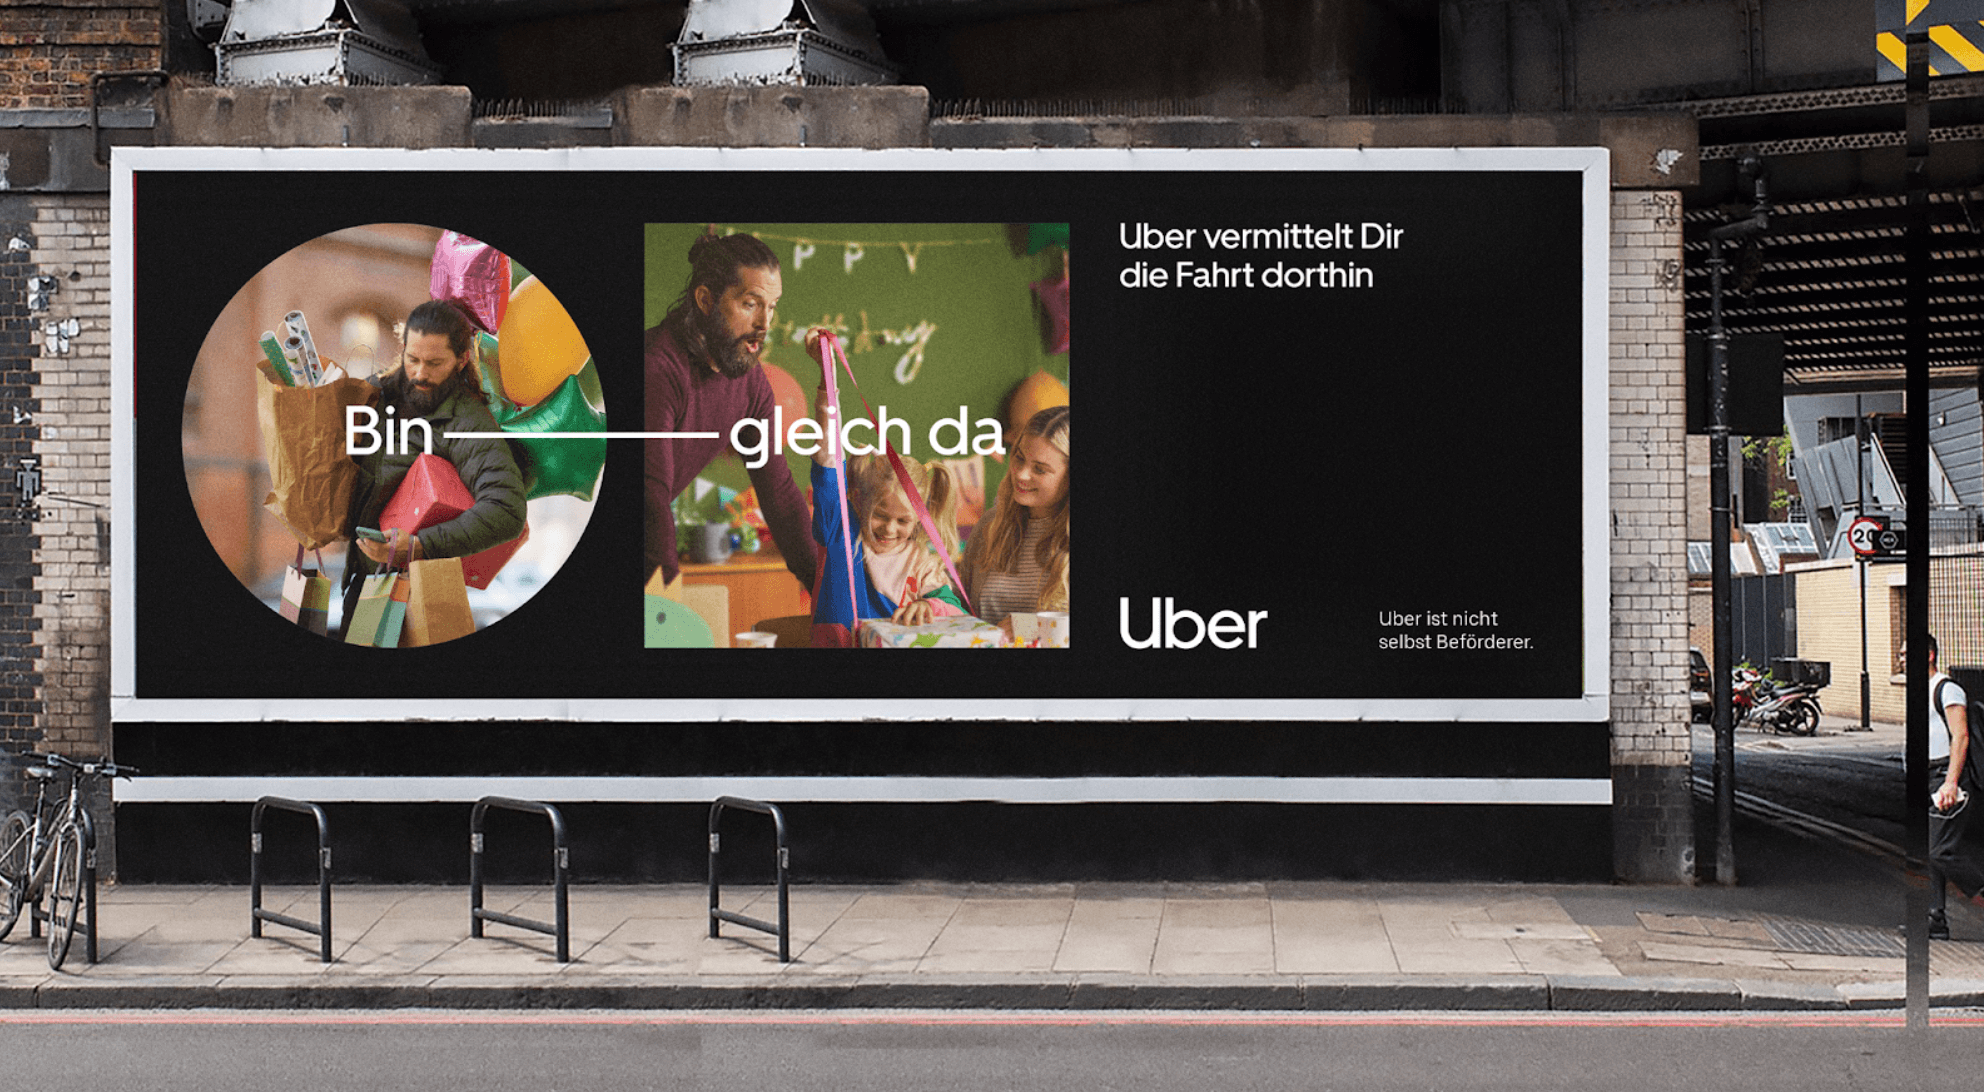 Bild von der Uber-Kampagne Bin gleich da mit Plakatwerbung im Straßenszenario als gutes Beispiel für erfolgreiches Storytelling im Marketing.